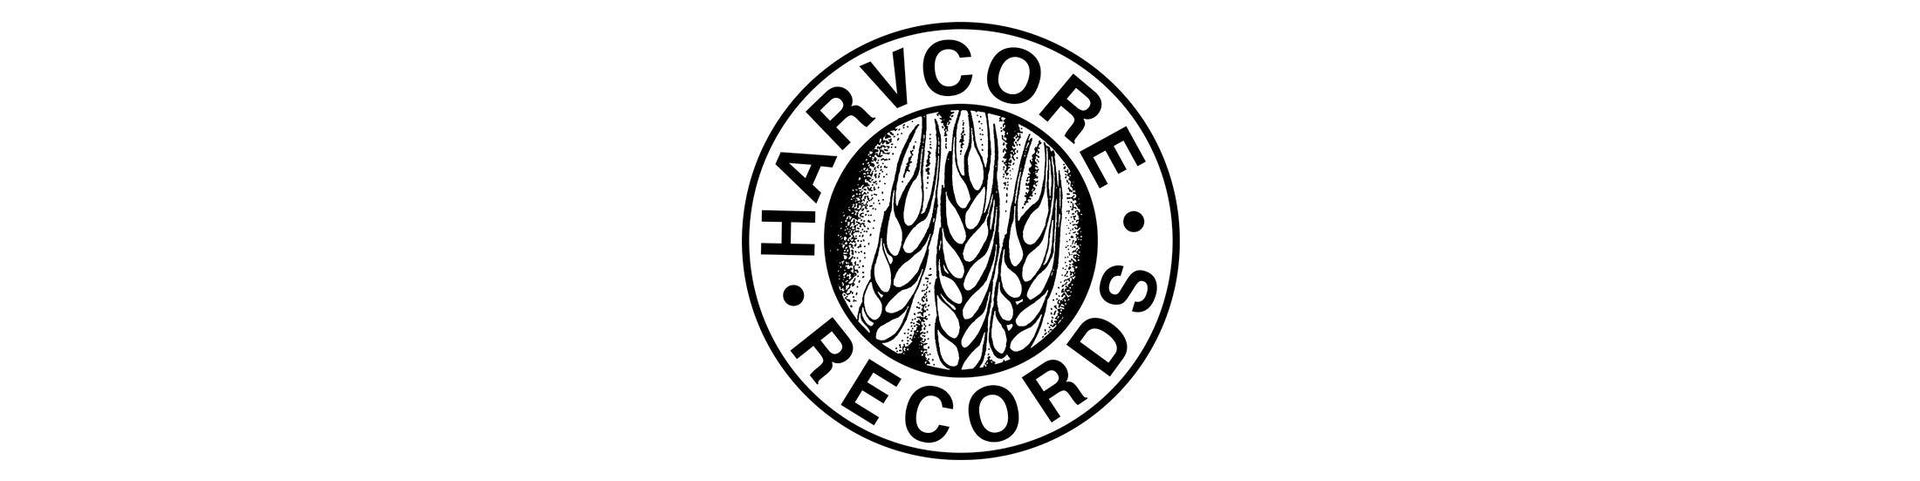 Shop – Harvcore Records – Band & Music Merch – Cold Cuts Merch